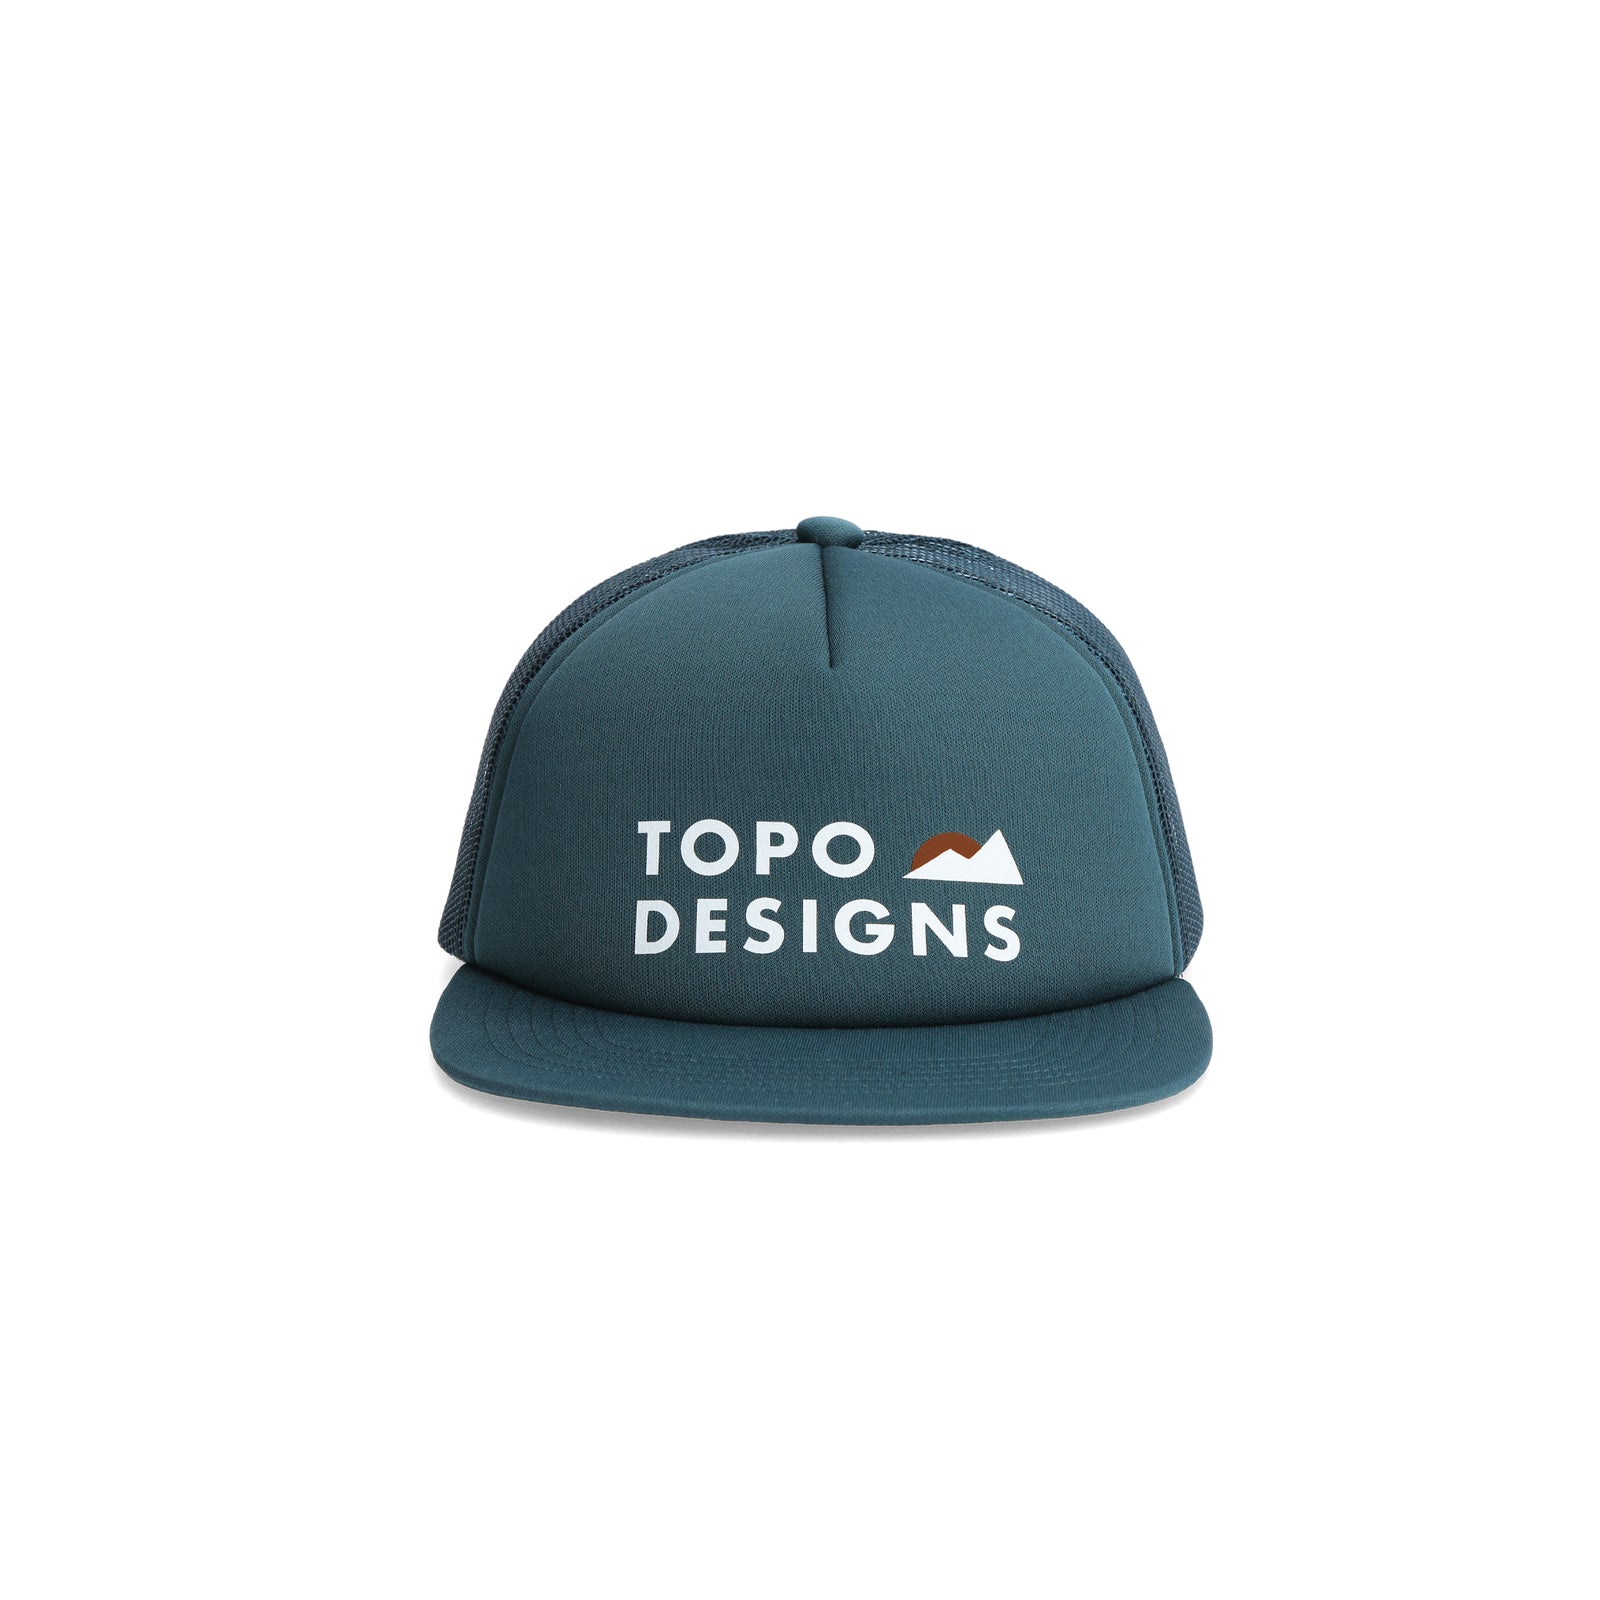 Topo Designs Mountain Waves Foam Trucker Hat in "Pond Blue"